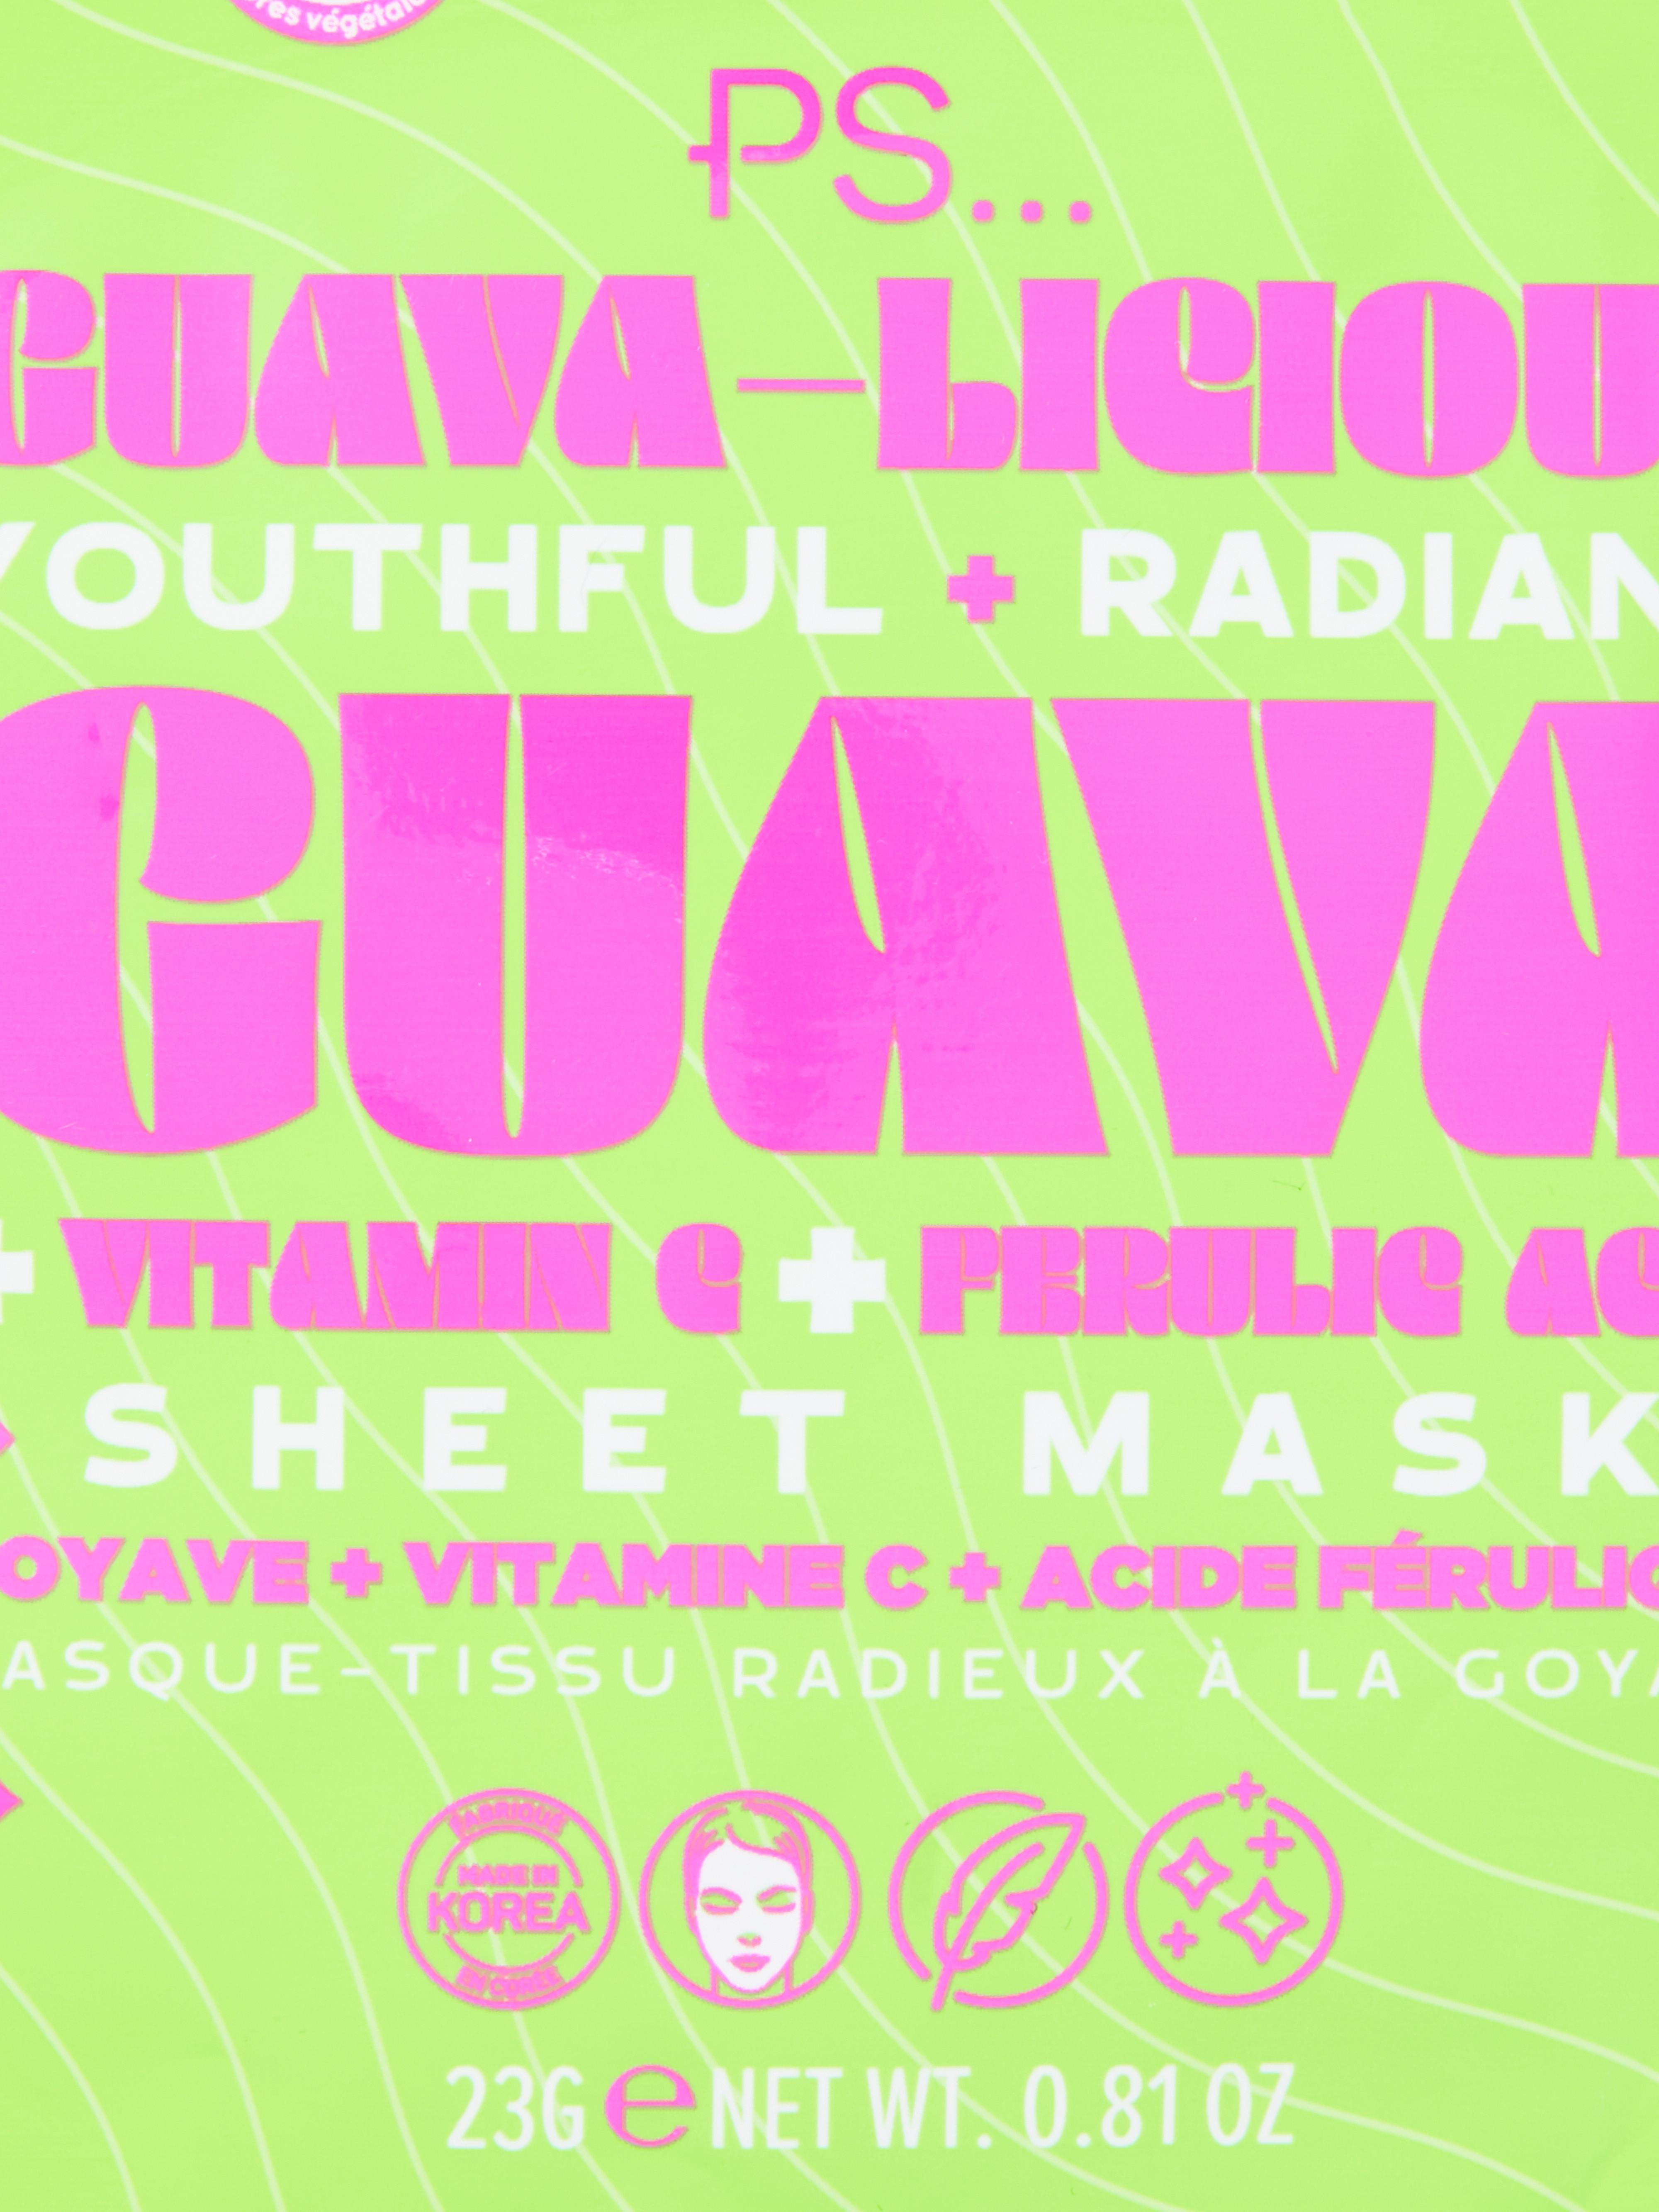 PS… Guava and Vitamin C Sheet Mask